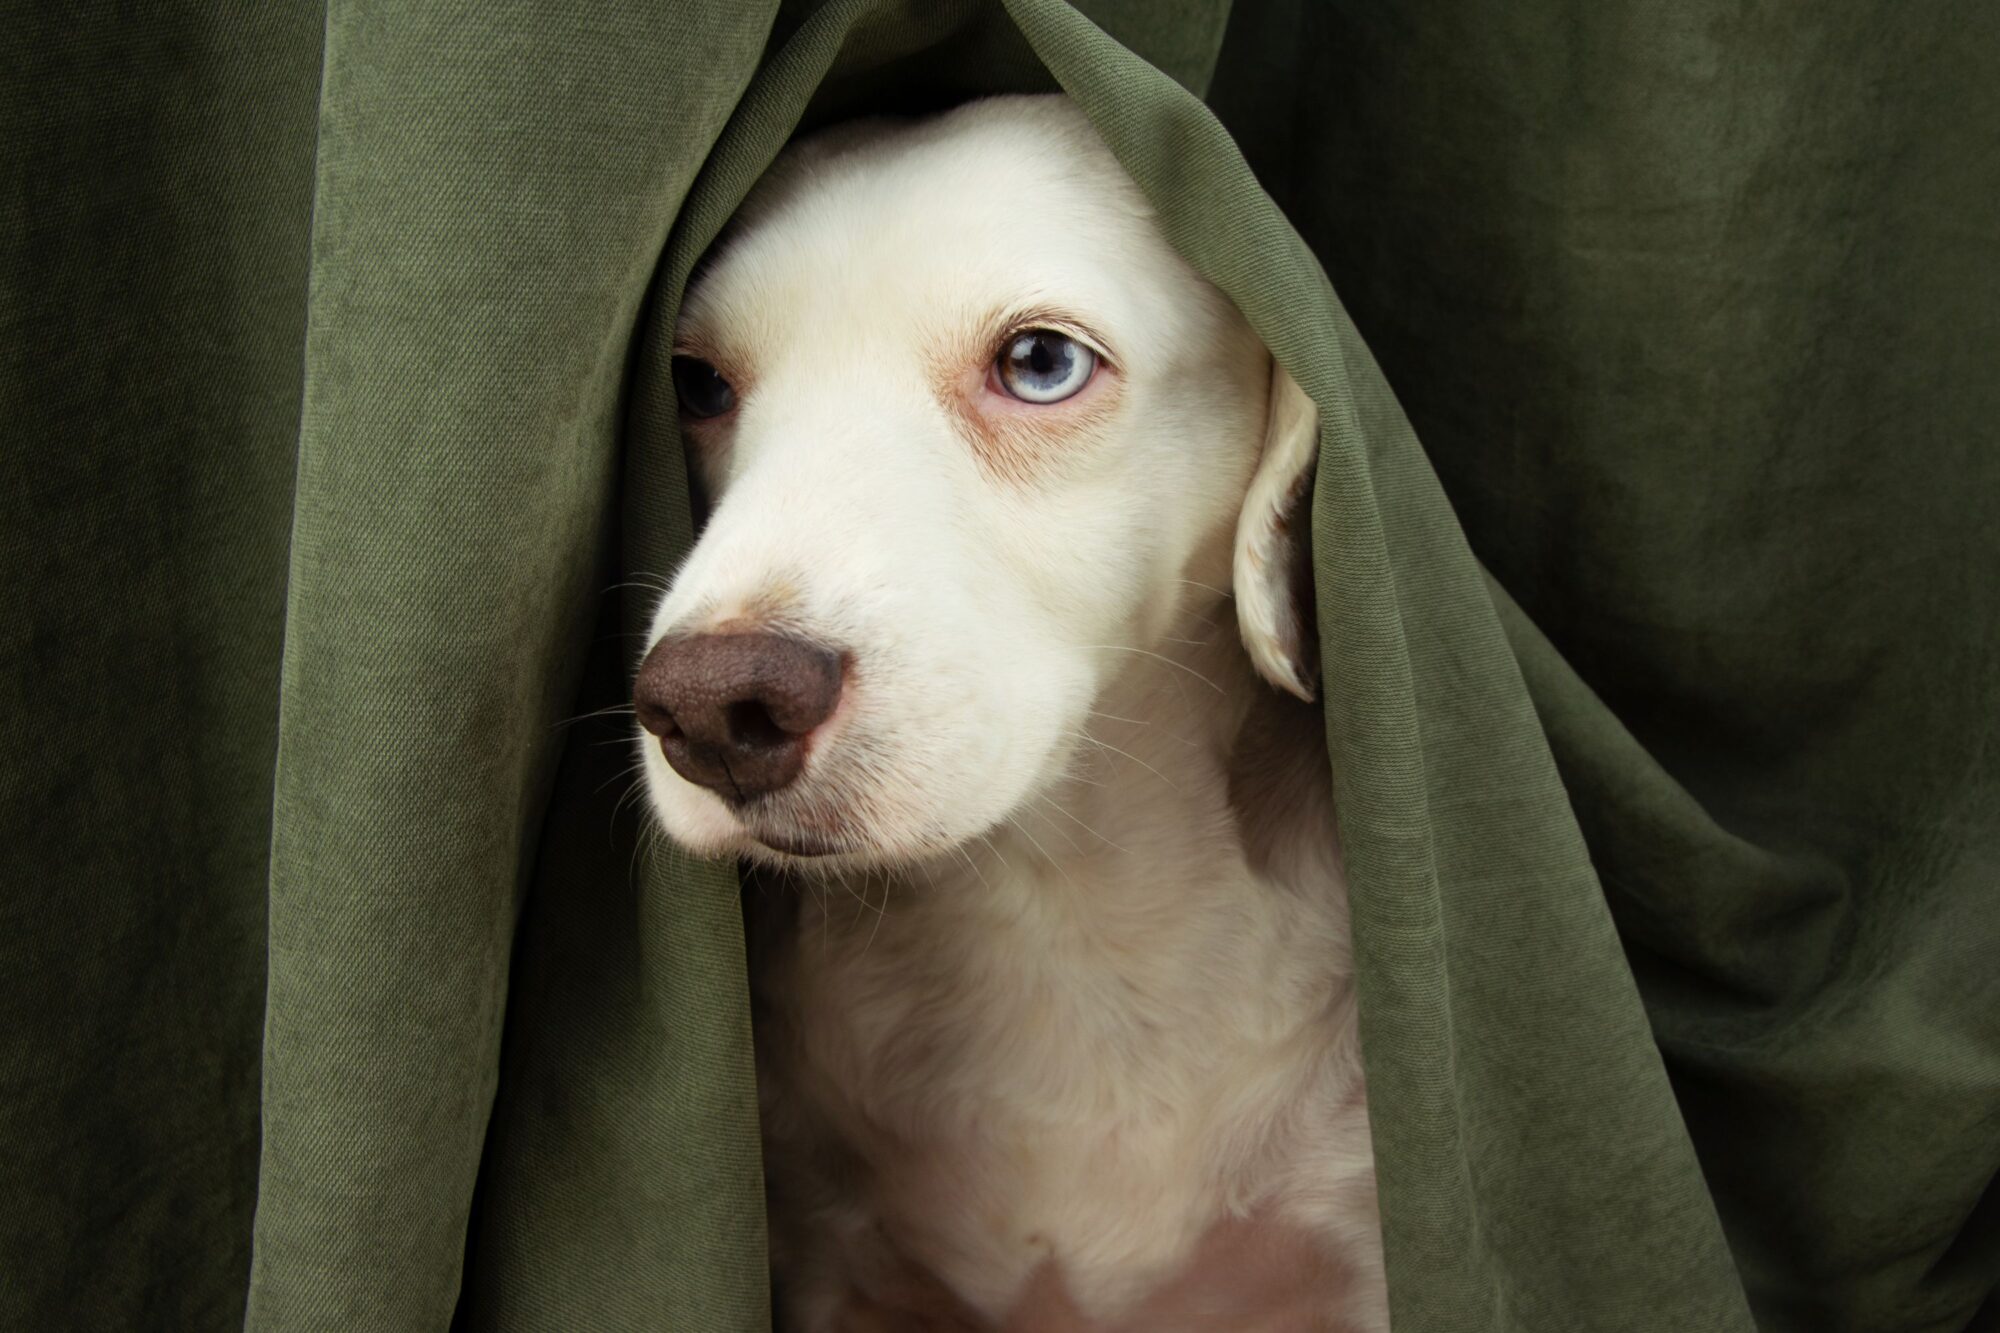 cute puppy hiding under curtain.